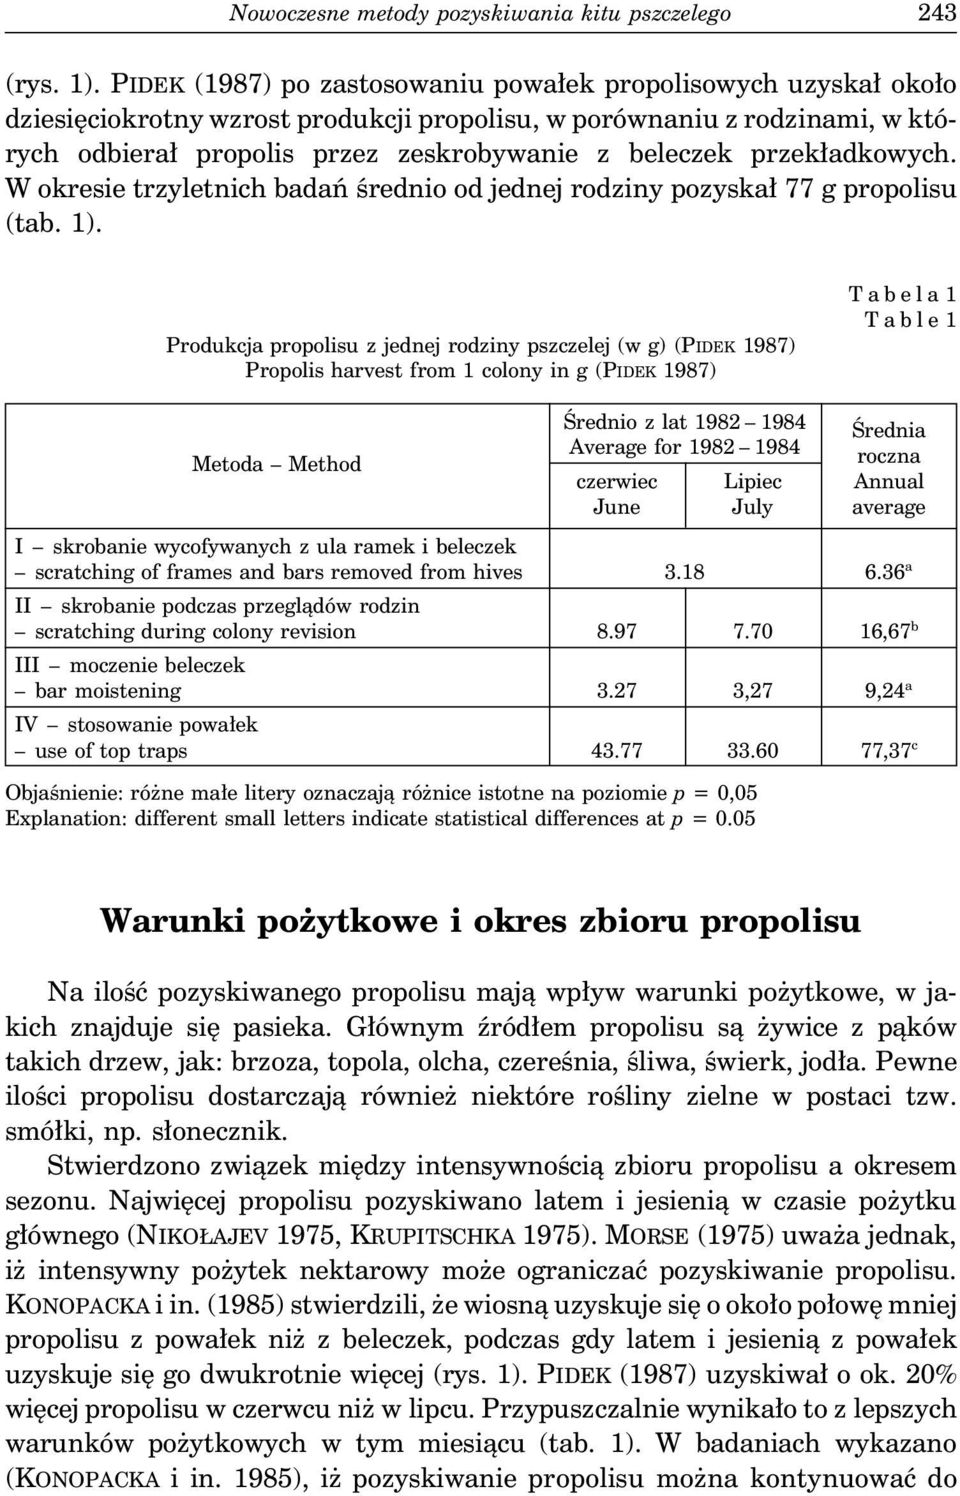 przekładkowych. W okresie trzyletnich badań średnio od jednej rodziny pozyskał 77 g propolisu (tab. 1).